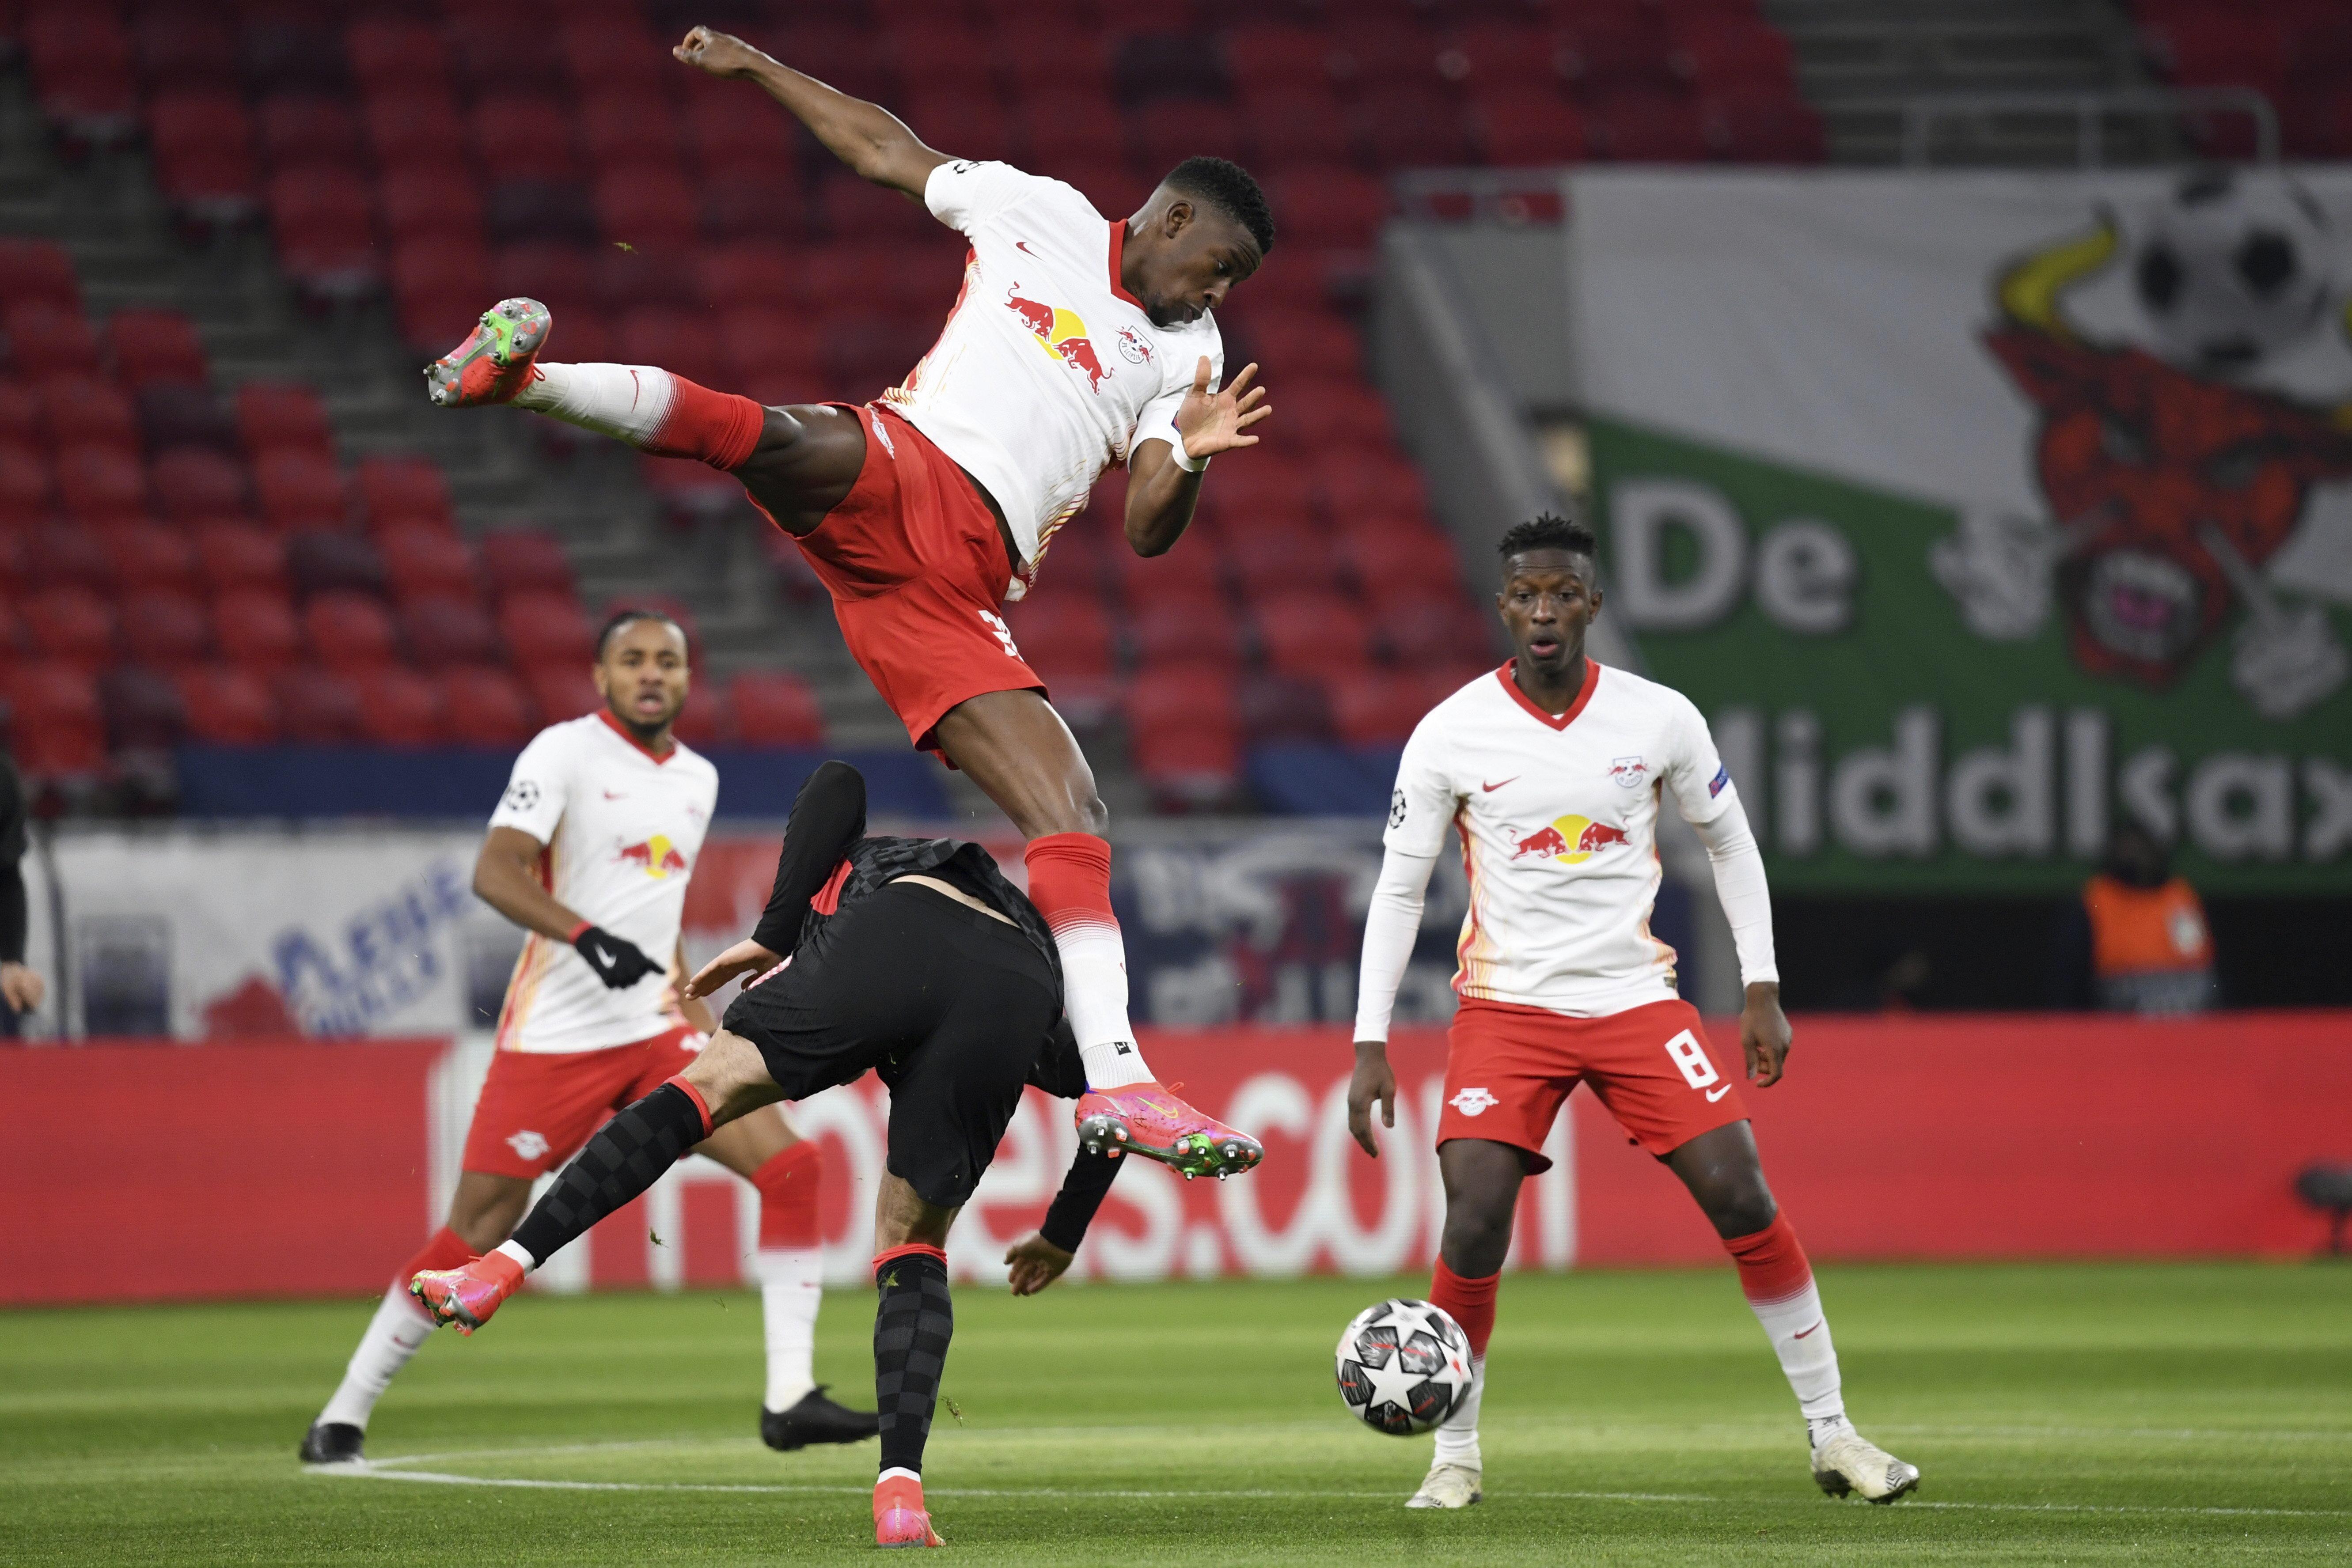 (ÖZET) Leipzig - Liverpool maç sonucu: 0-2